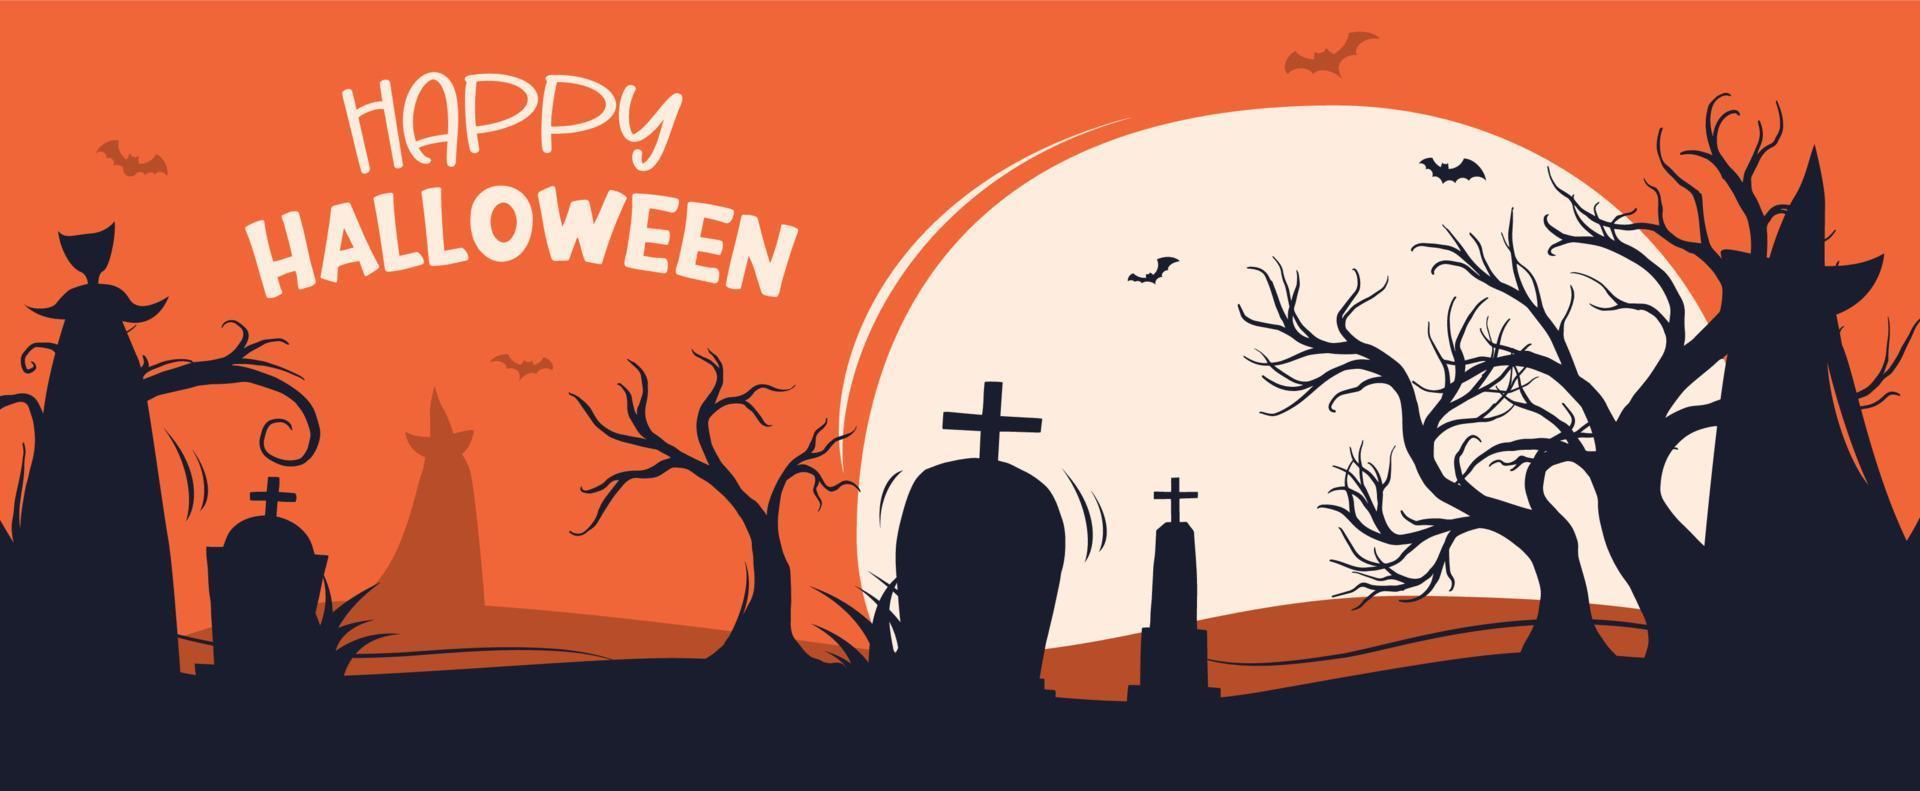 halloween-partyeinladungen oder grußkartenhintergrund. halloween-illustrationsvorlage für banner, poster, flyer, verkauf und alles design. vektor